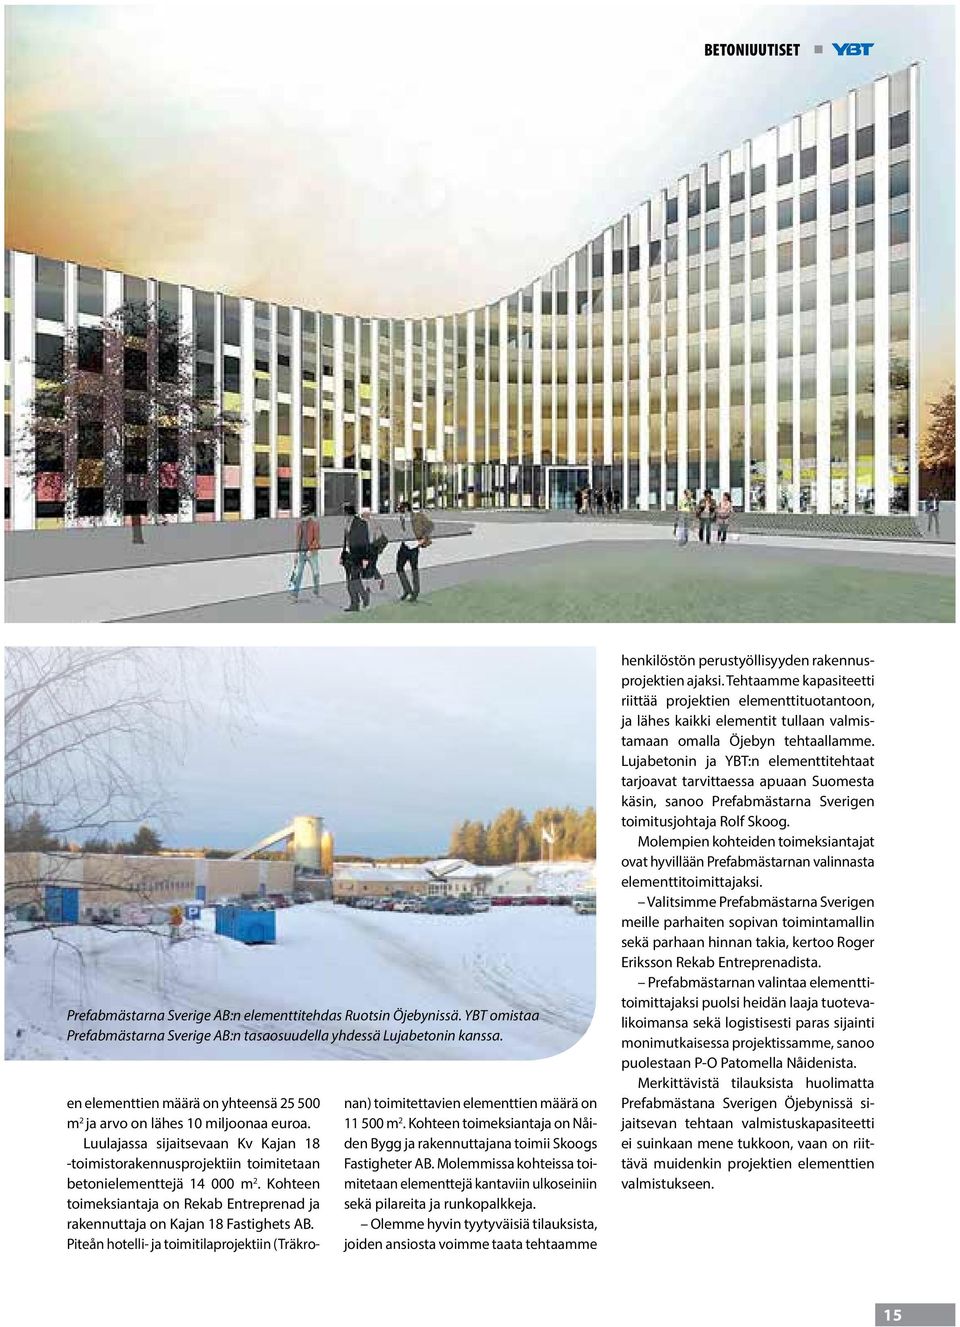 Kohteen toimeksiantaja on Rekab Entreprenad ja rakennuttaja on Kajan 18 Fastighets AB. Piteån hotelli- ja toimitilaprojektiin (Träkronan) toimitettavien elementtien määrä on 11 500 m 2.